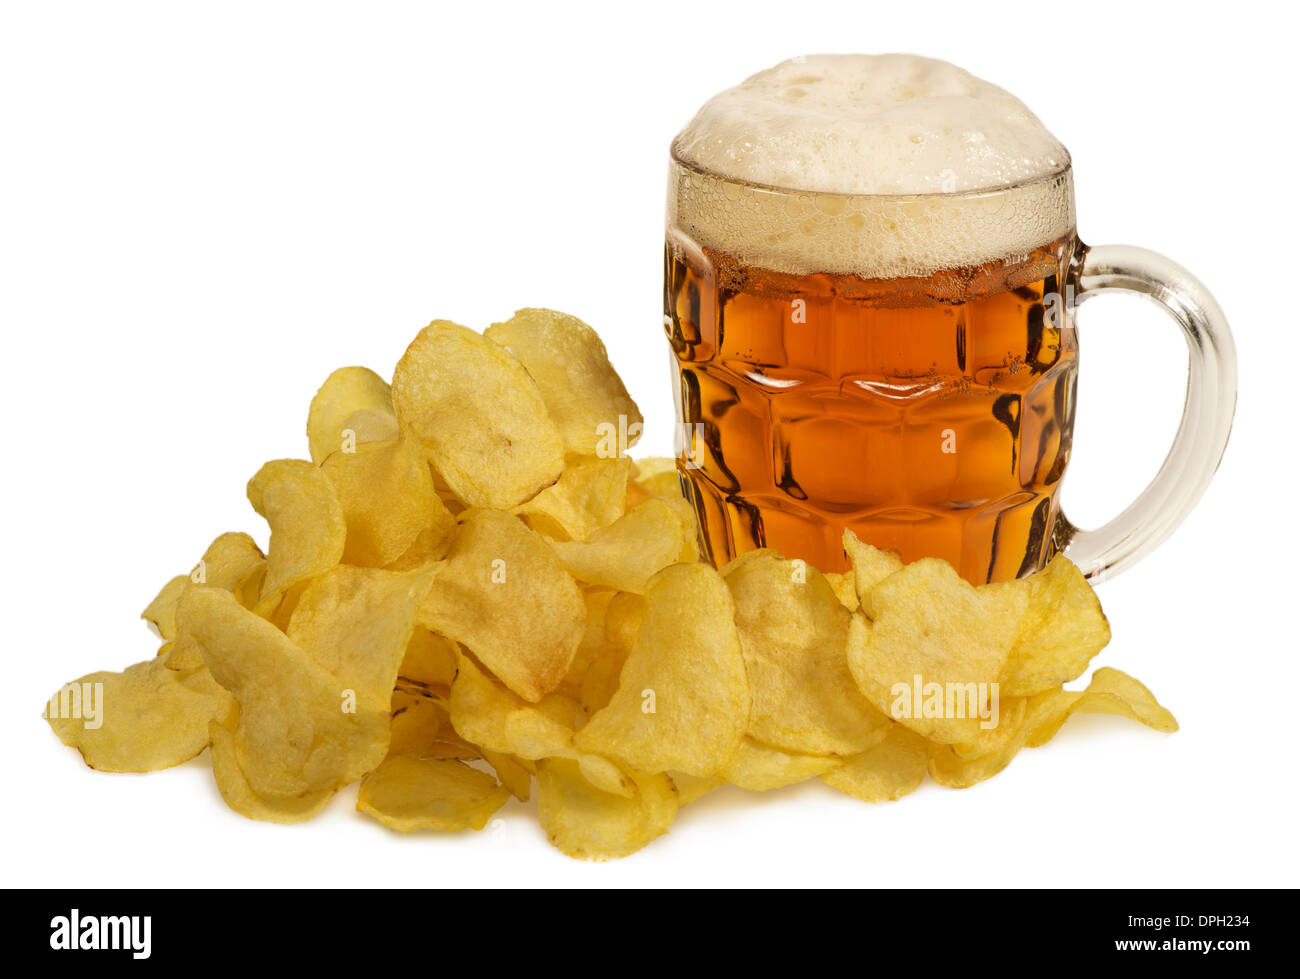 Kartoffel-Chips und Krug Bier Stockfoto